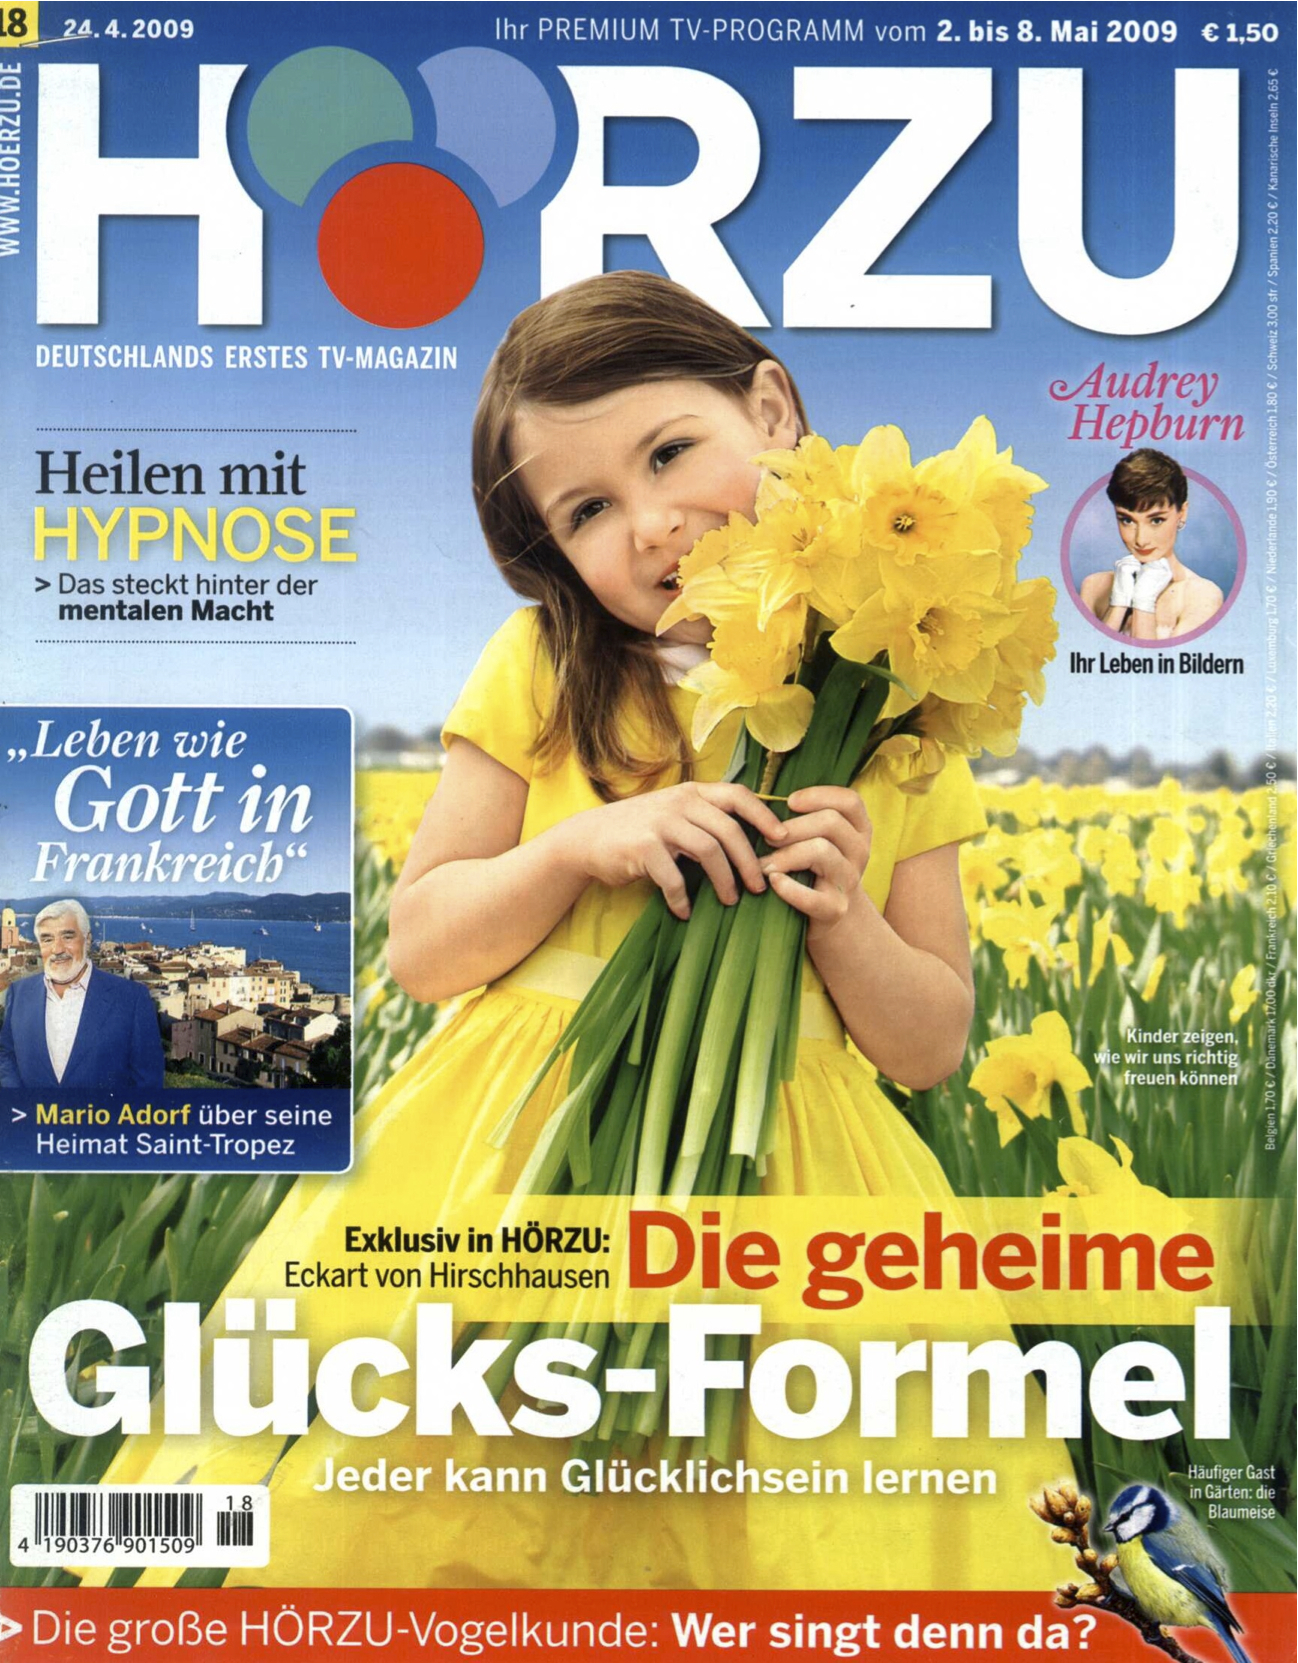 HZ_24.4.2009_Cover.jpg